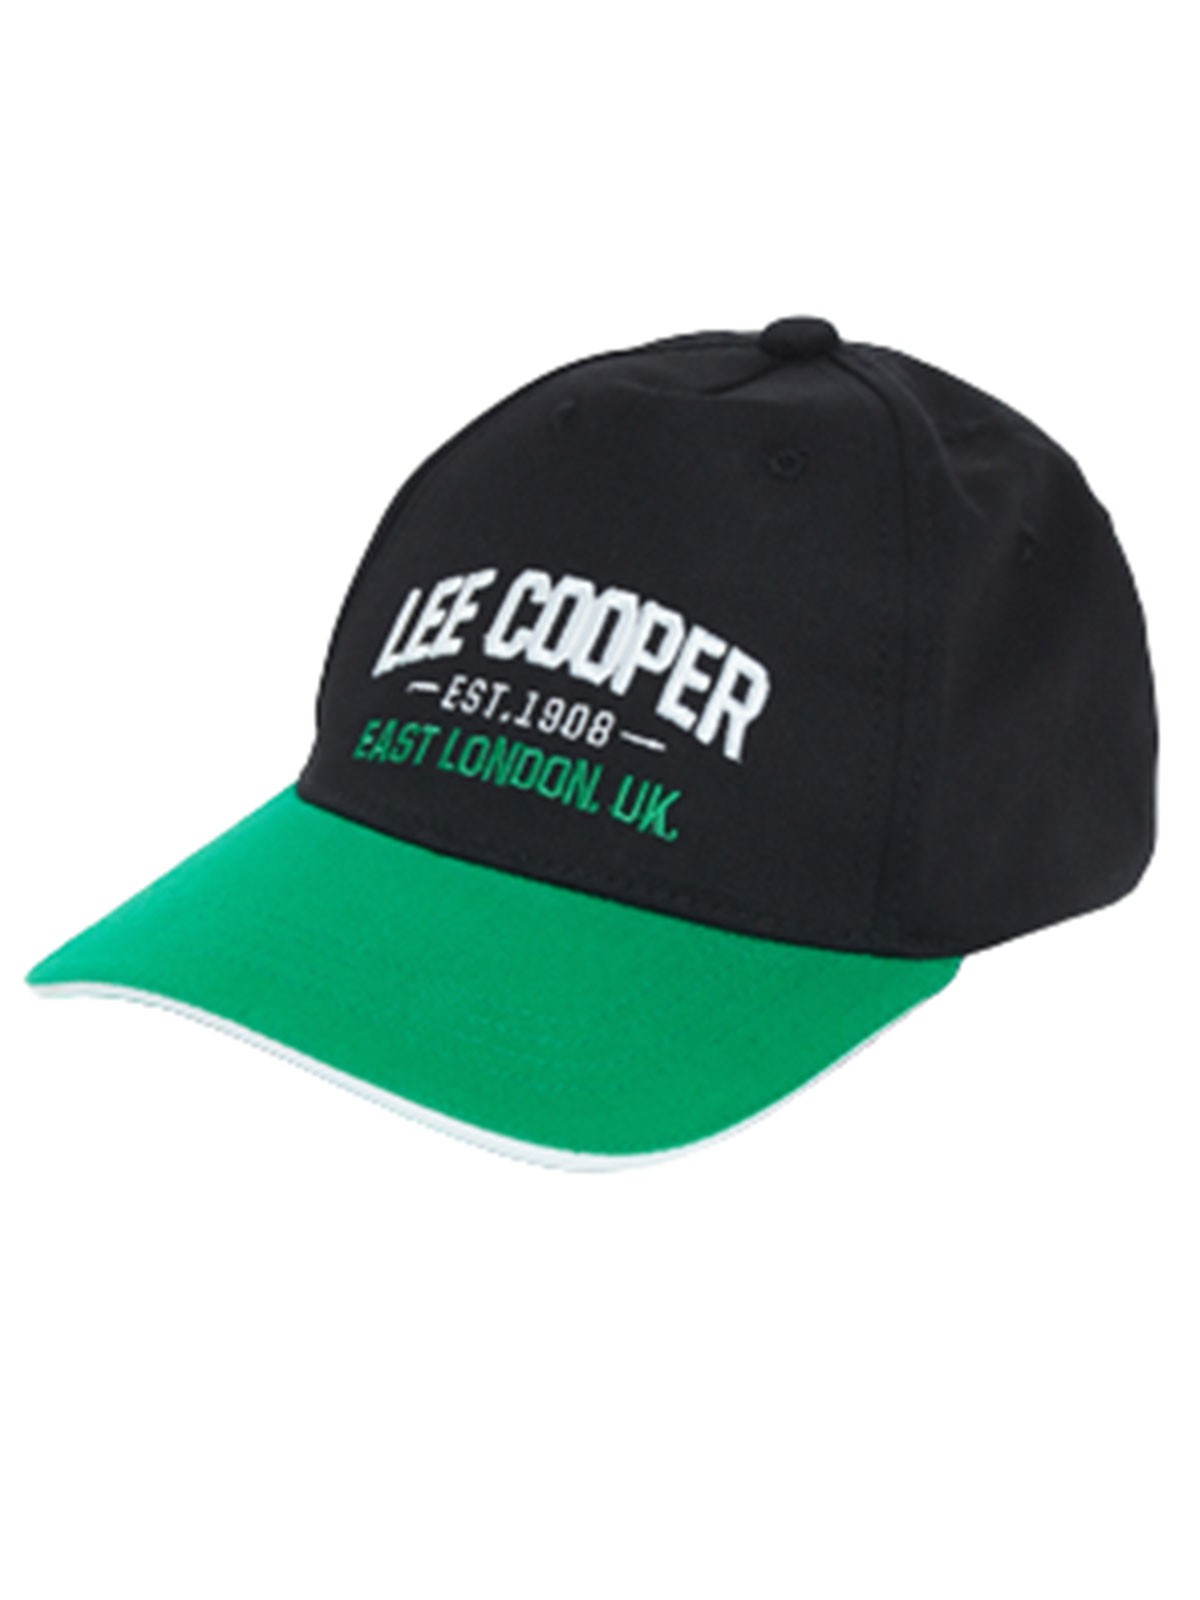 Lee Cooper Mütze mit Visier